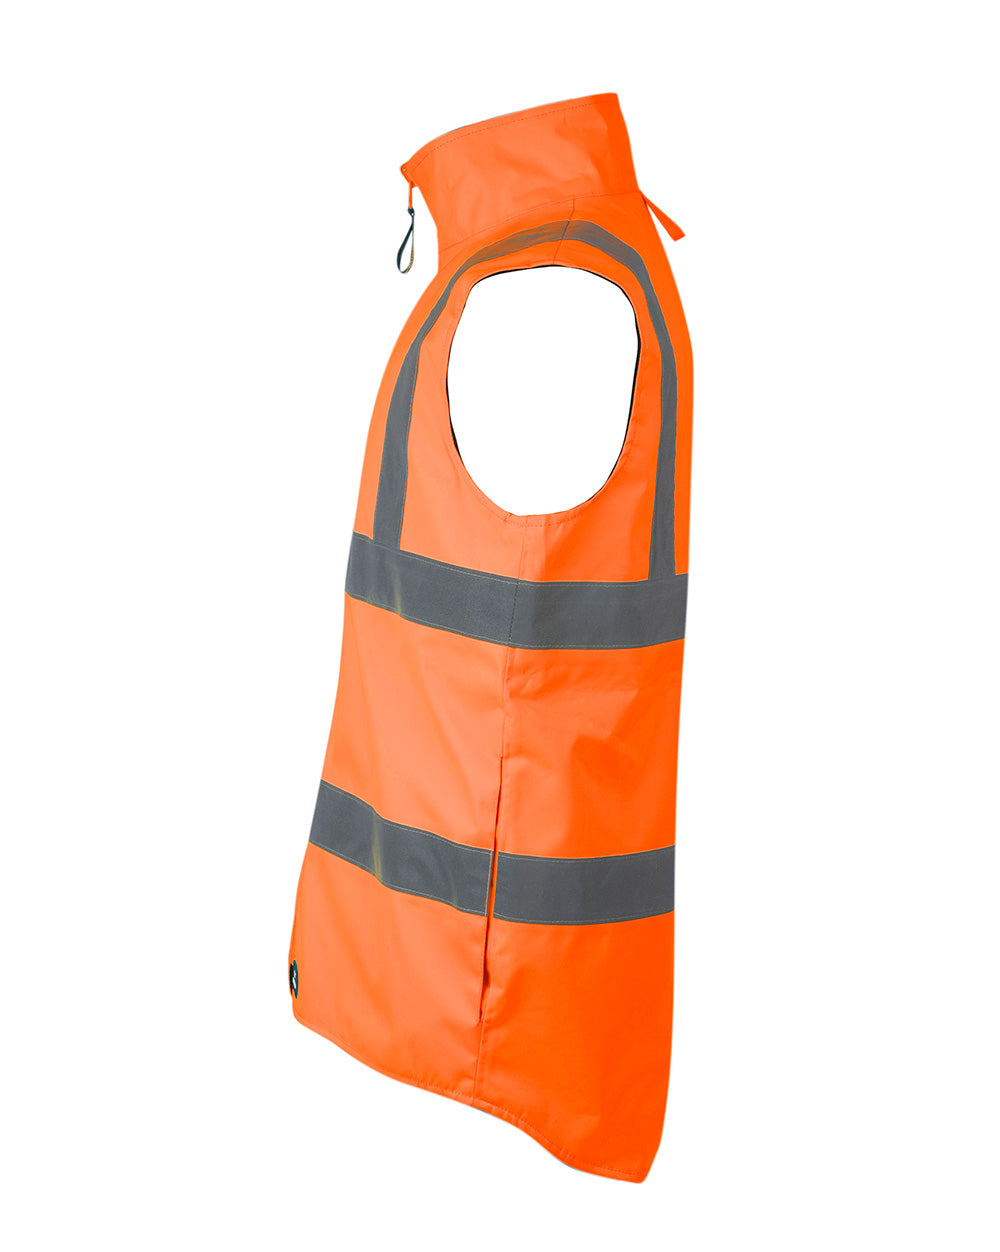 Reversible Utility Vest in Fluoro Orange